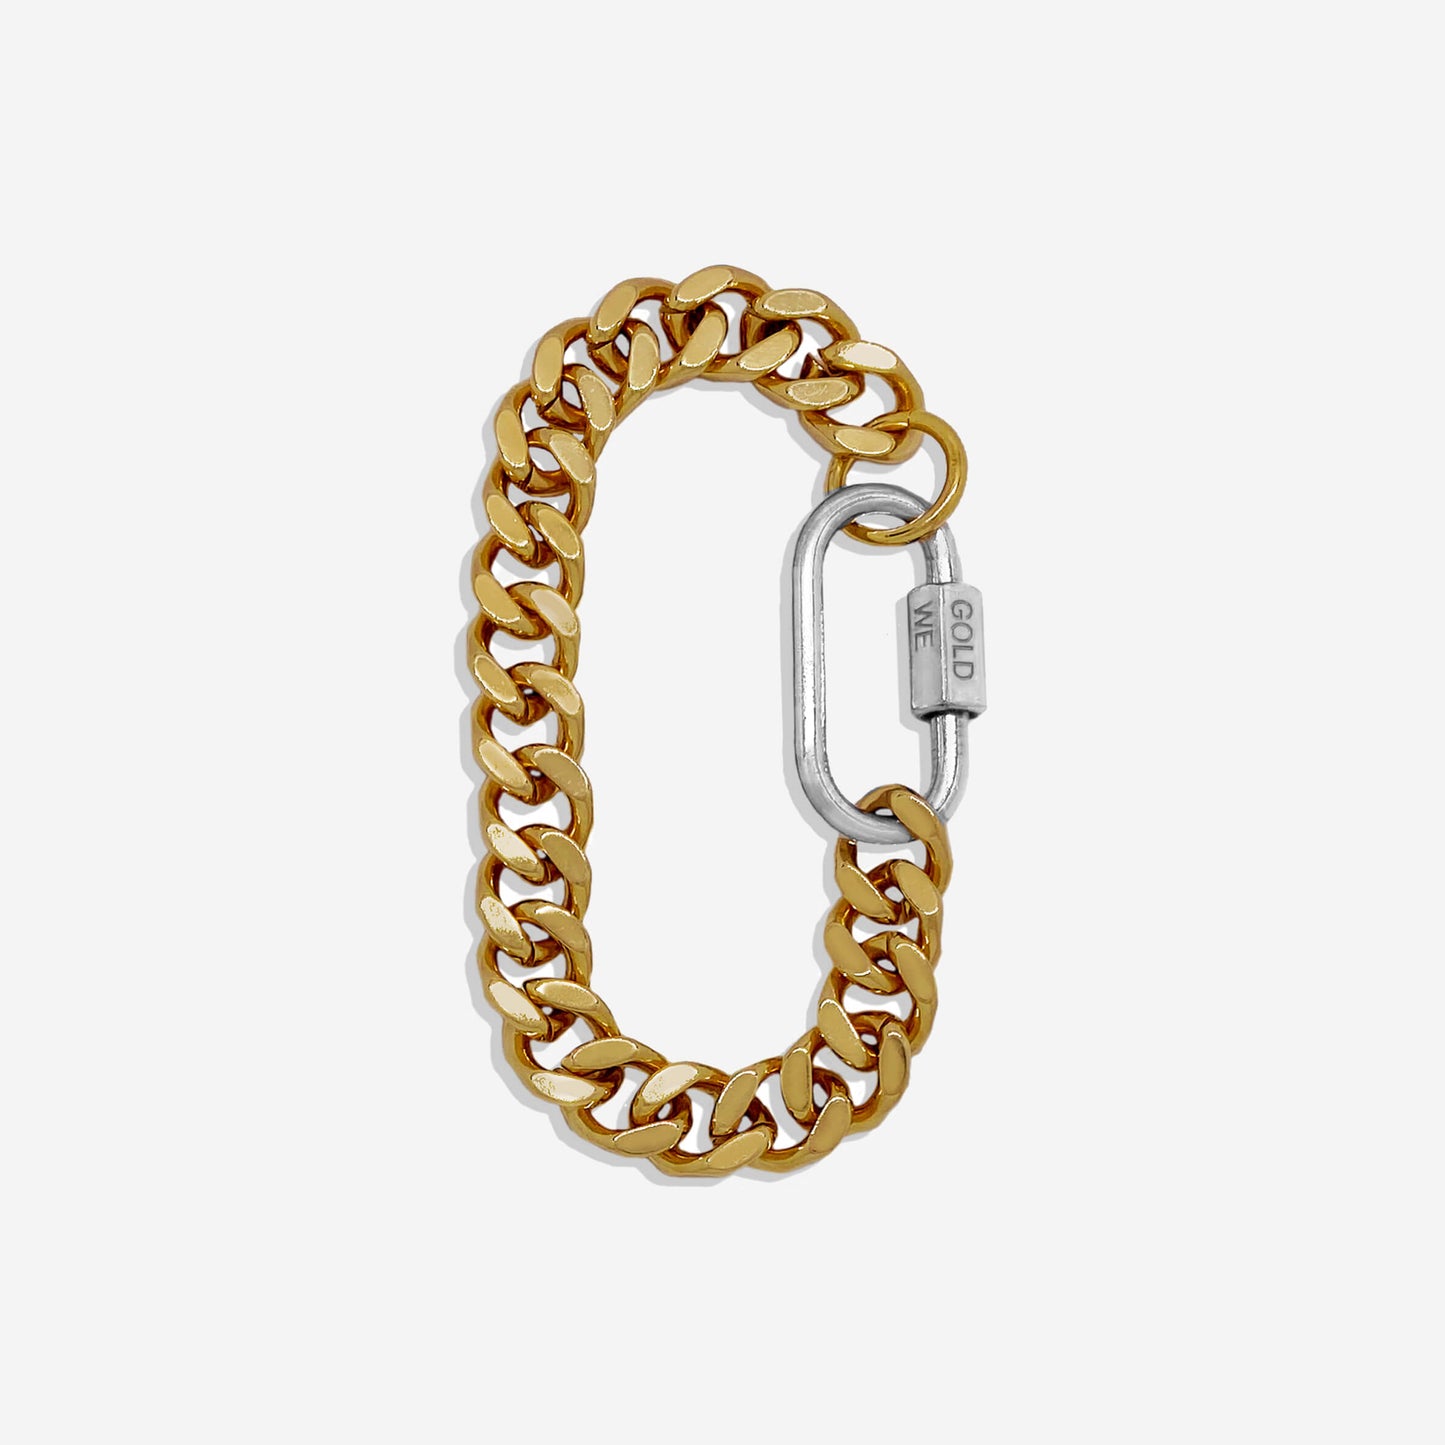 IN GOLD WE TRUST| Unisex Bracelet - Cuban BRASS Chain